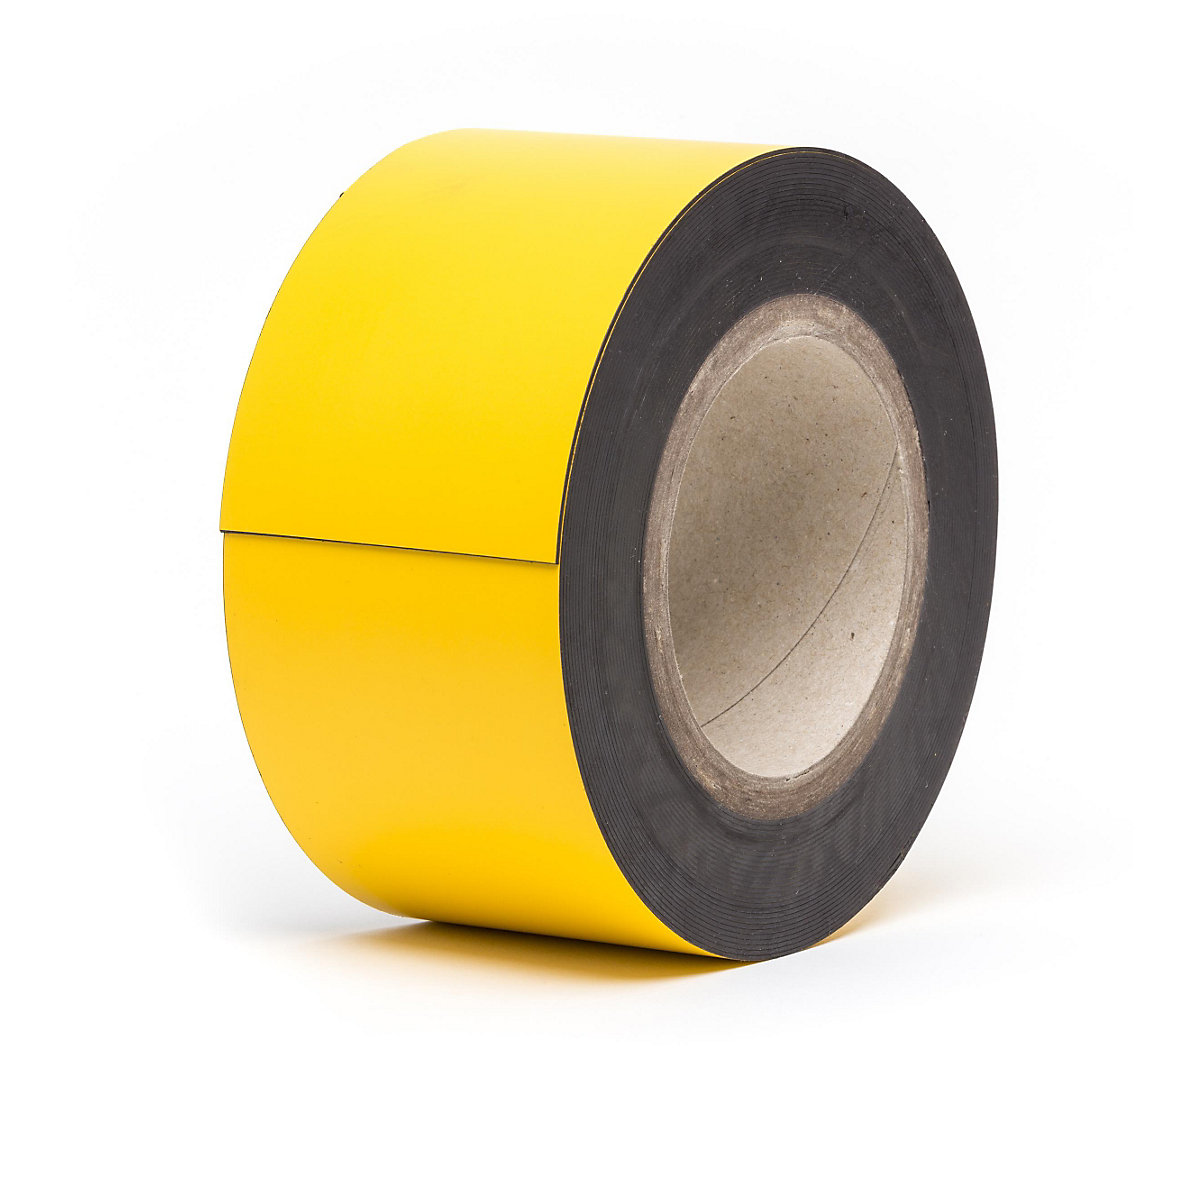 Rótulos magnéticos para almacén, mercancía en rollo, amarillo, altura 80 mm, longitud de rollo 10 m-11